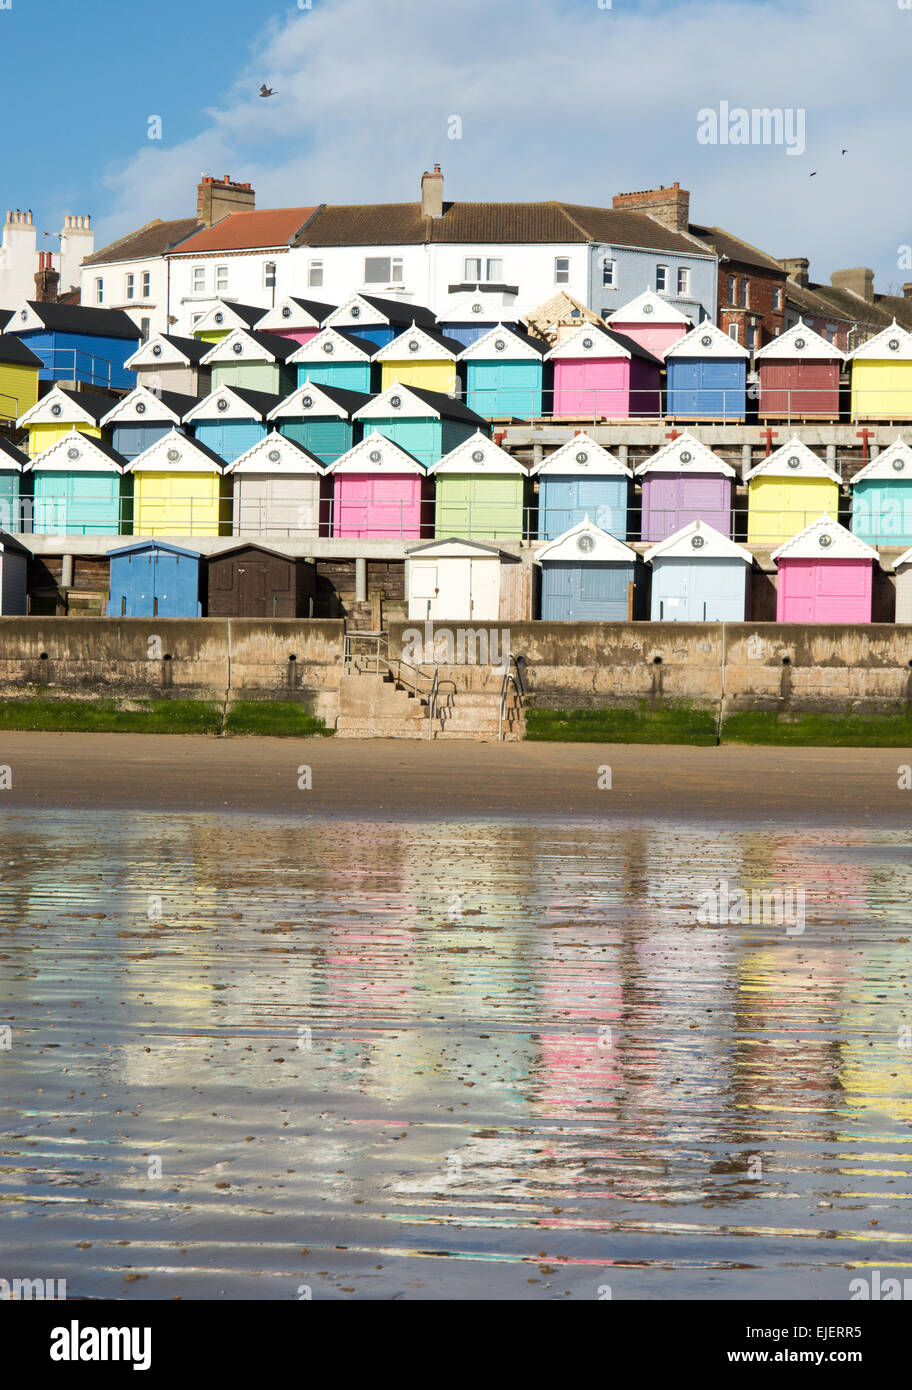 Una colorida selección de cabañas de playa que se han creado cerca de Walton en el Naze se reflejan en la playa de arena húmeda. Foto de stock